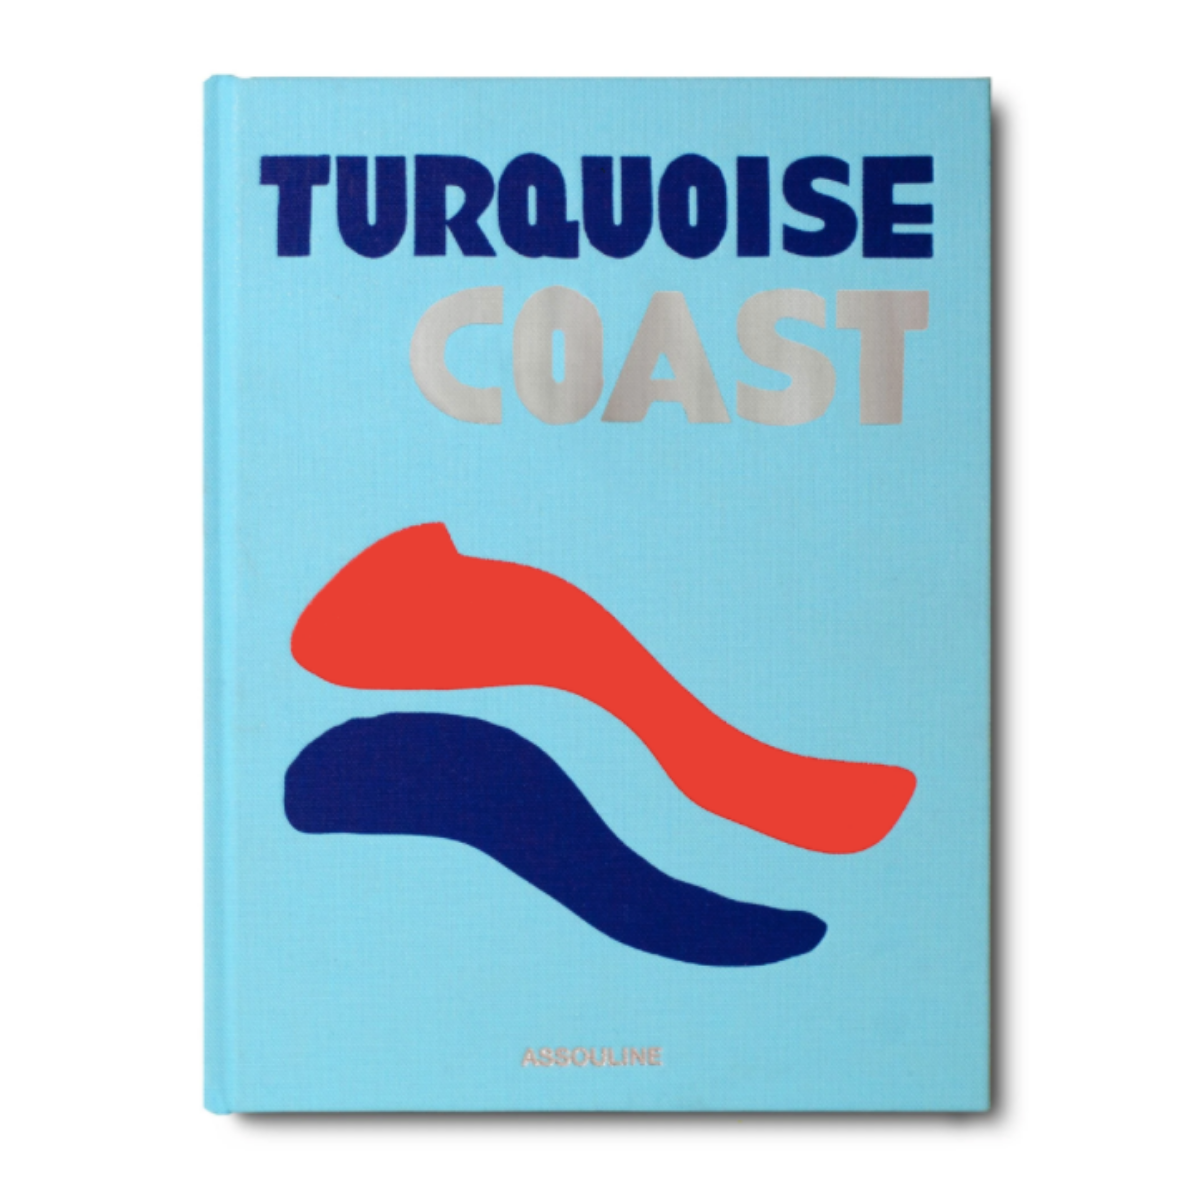 "Turquoise Coast"